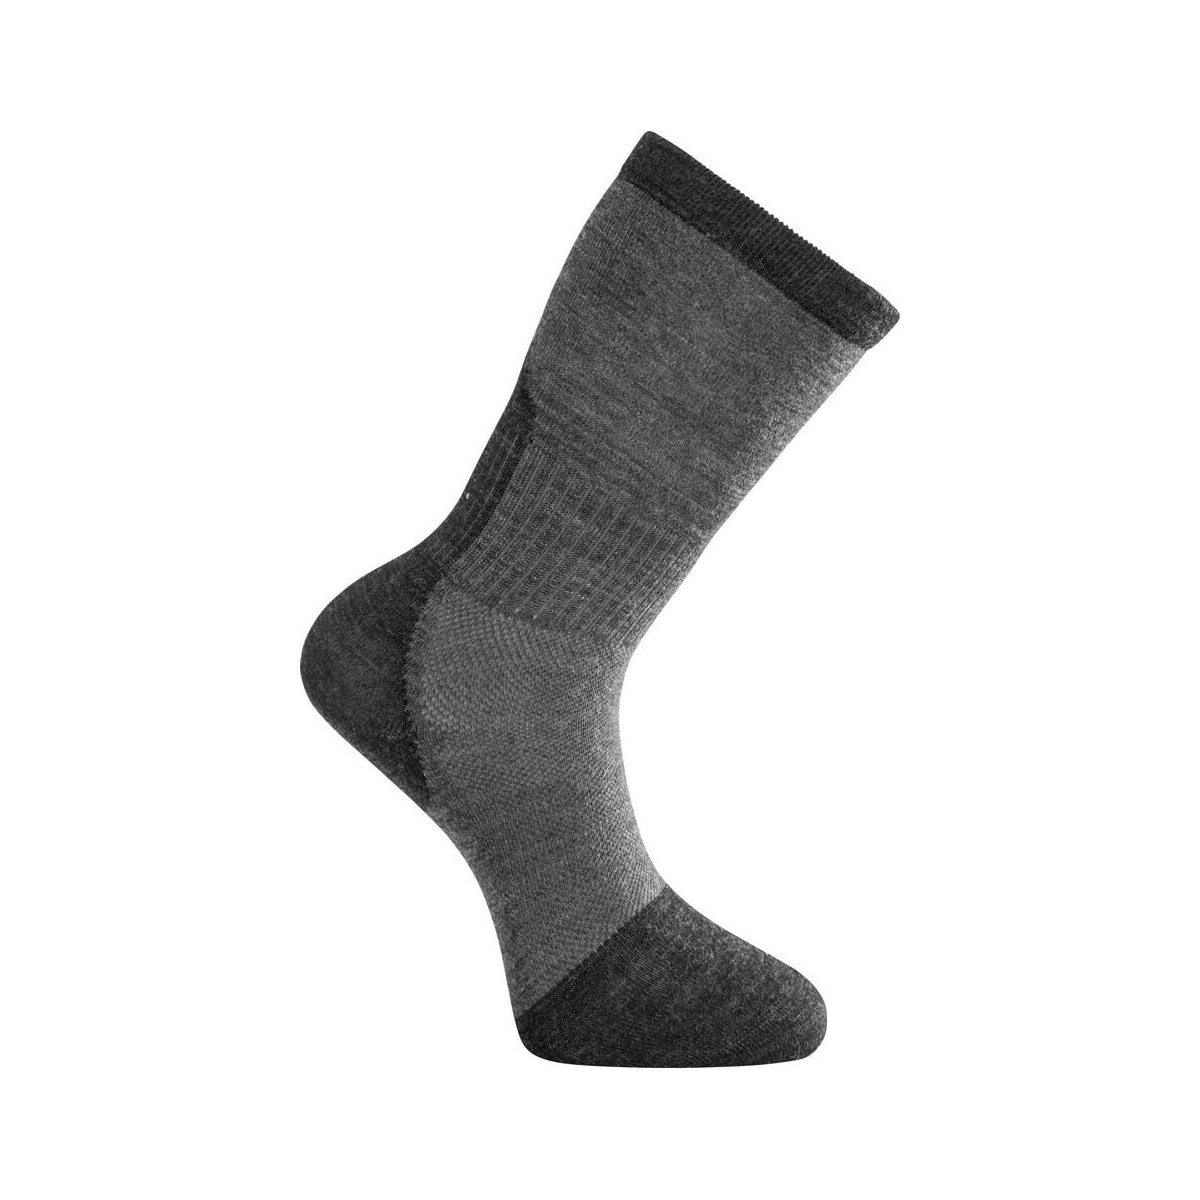 Woolpower Skilled liner sock